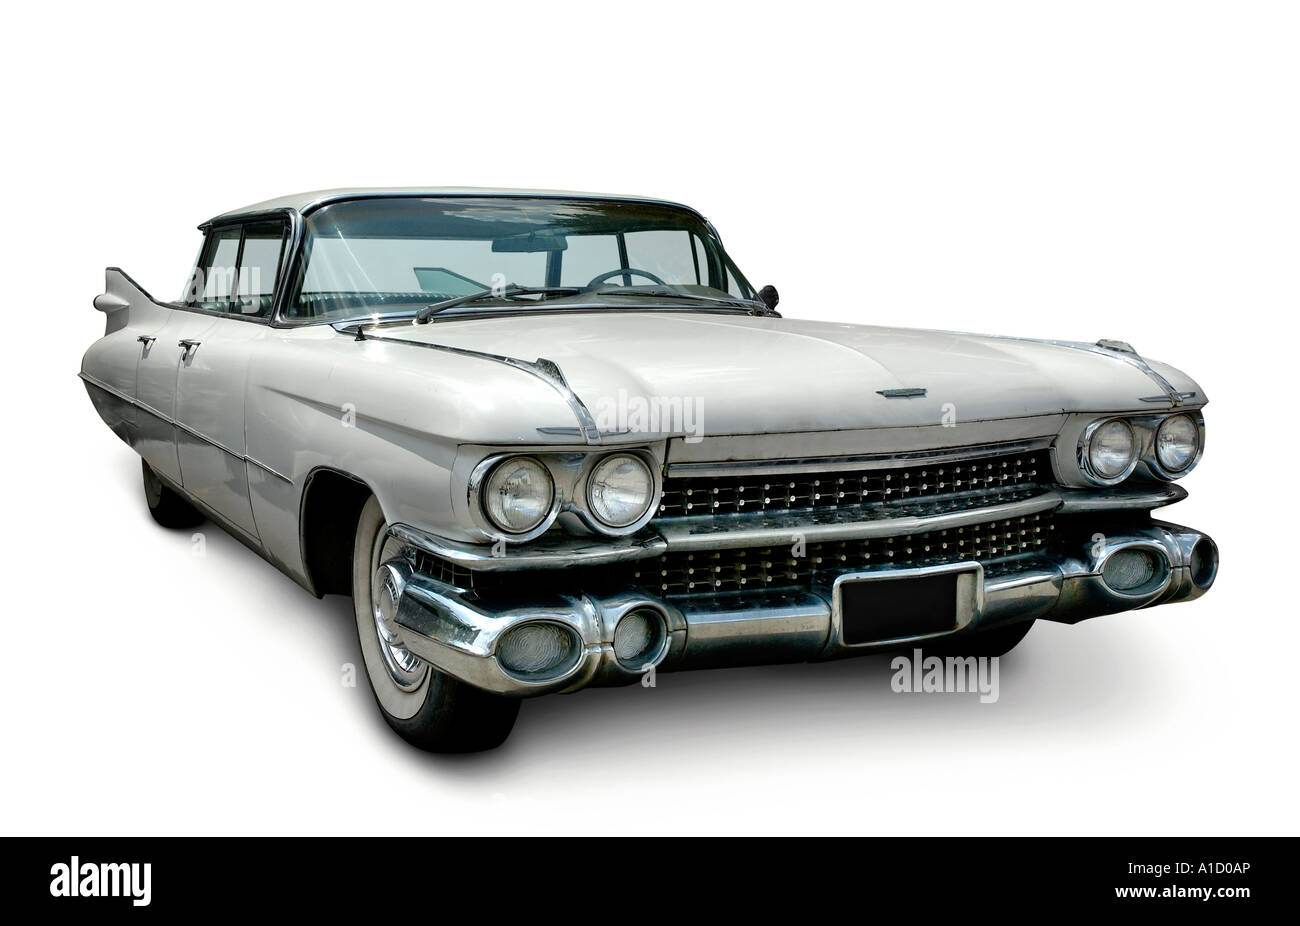 White Cadillac Fleetwood 1959 Classic American Automobile retrò Foto Stock